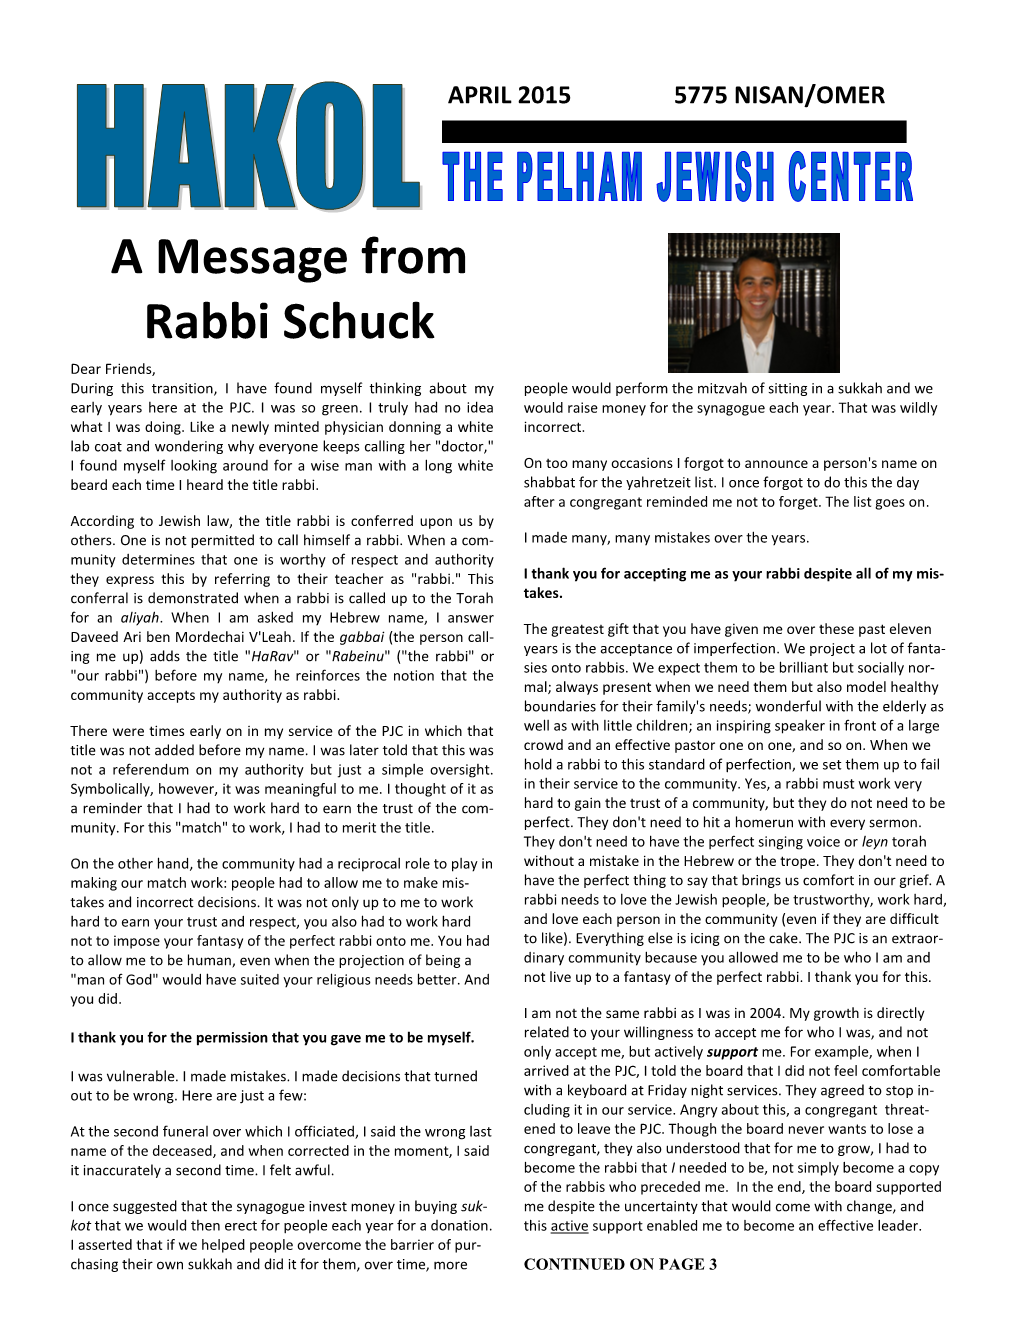 A Message from Rabbi Schuck